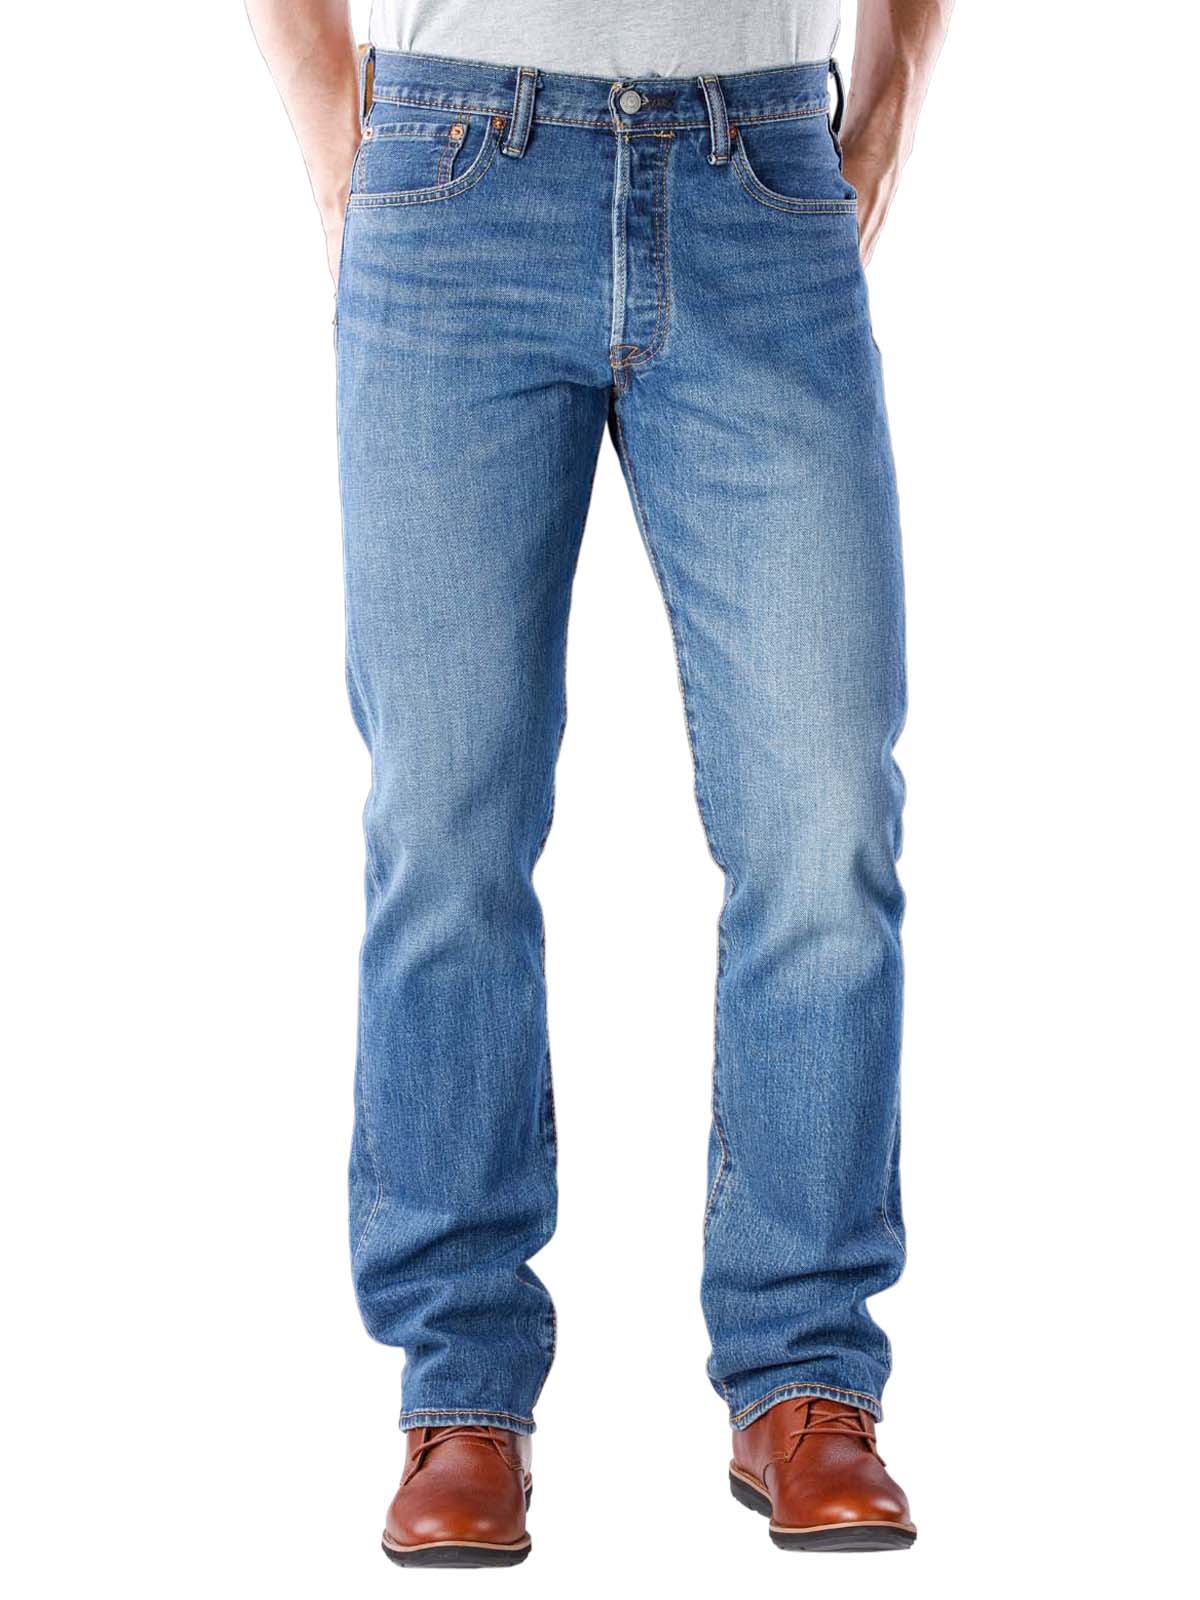 do 501 jeans stretch